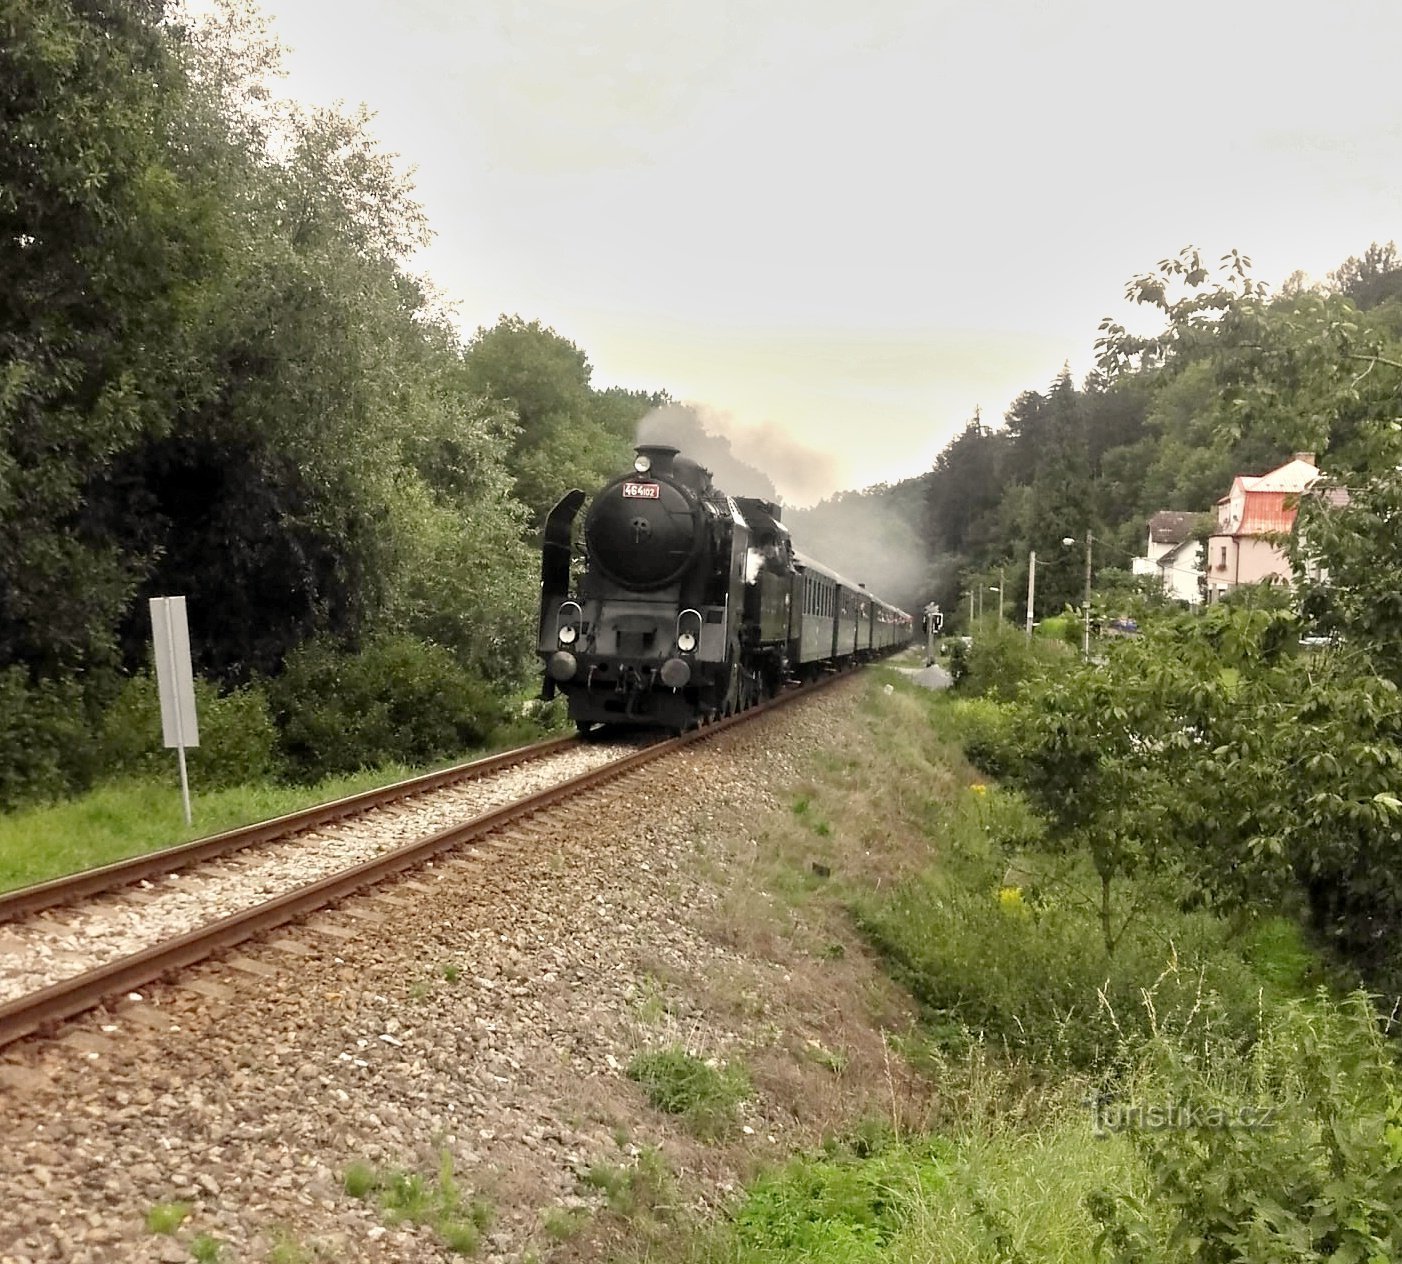 Locomotivele cu abur sunt rare pe căile ferate europene